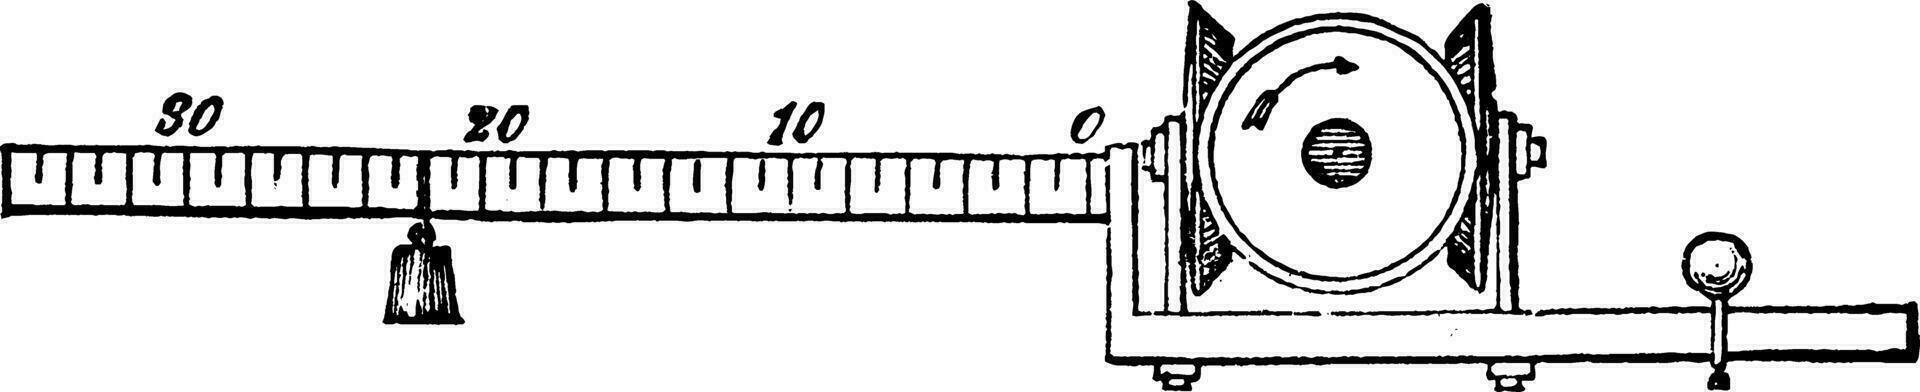 Dynamometer Balance, vintage illustration. vector